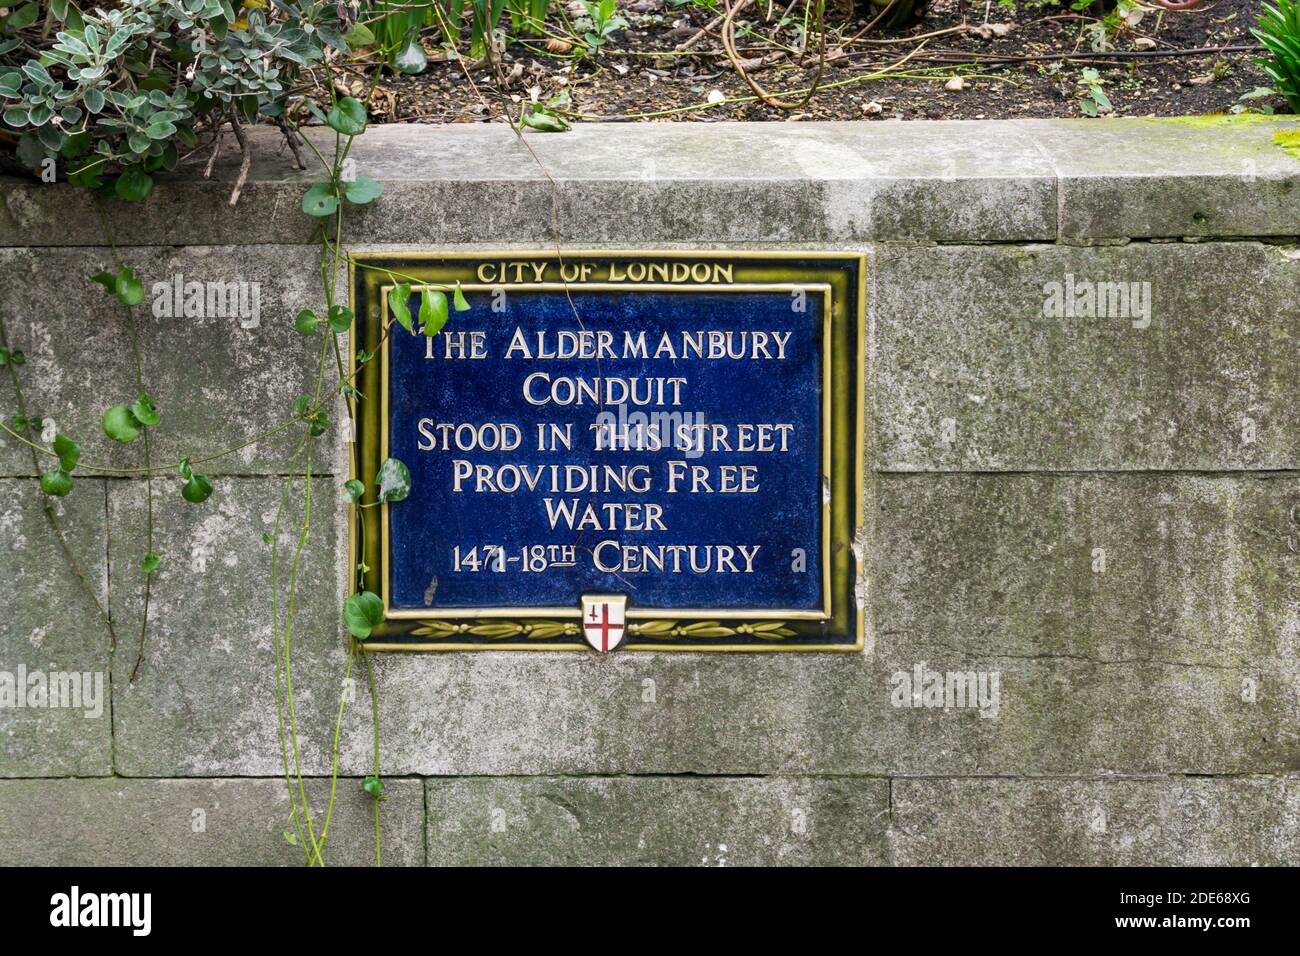 Une plaque bleue à Aldermanbury indique l'emplacement du conduit d'Aldermanbury qui a apporté de l'eau douce gratuite à la ville. Banque D'Images